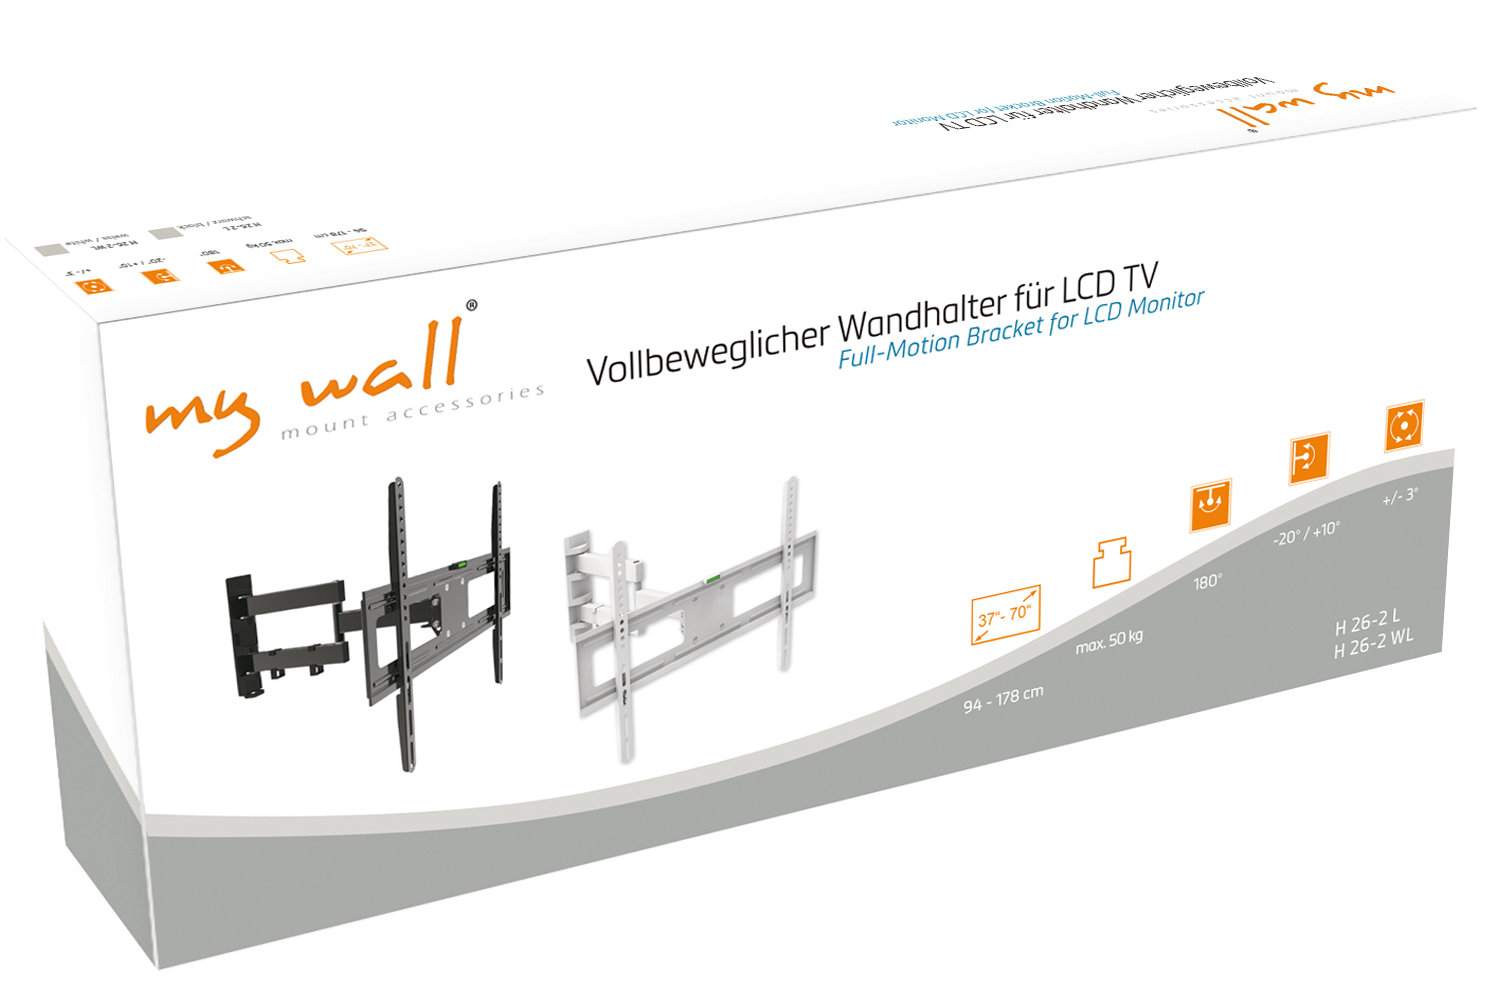 Vollbeweglicher Wandhalter für LCD TV My Wall H26-2-/bilder/big/h26-2,h26-2wl_karton.jpg